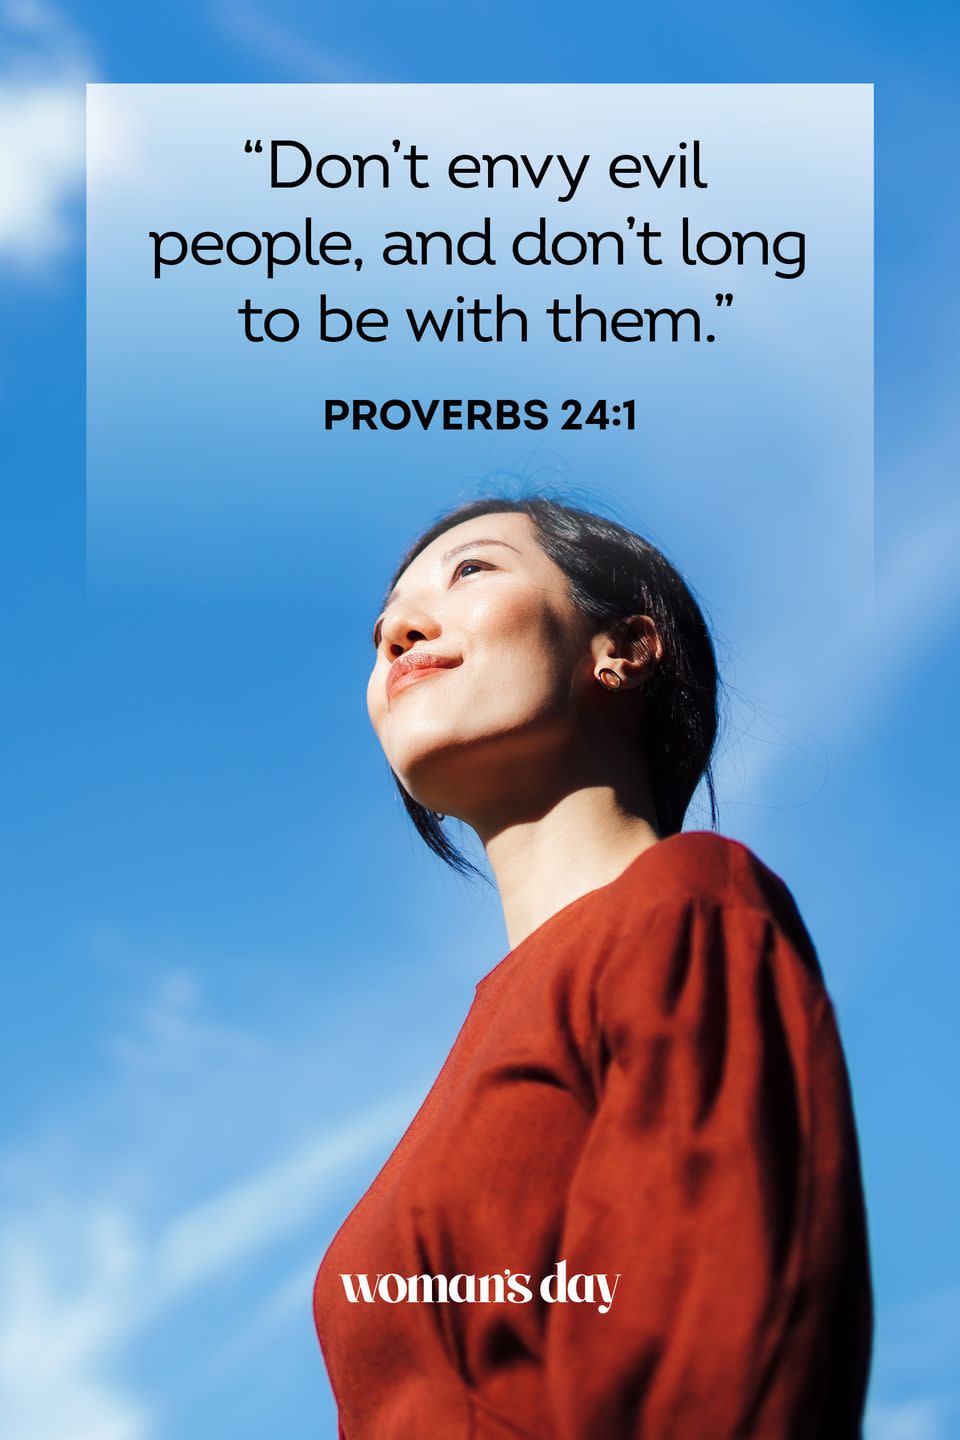 18) Proverbs 24:1